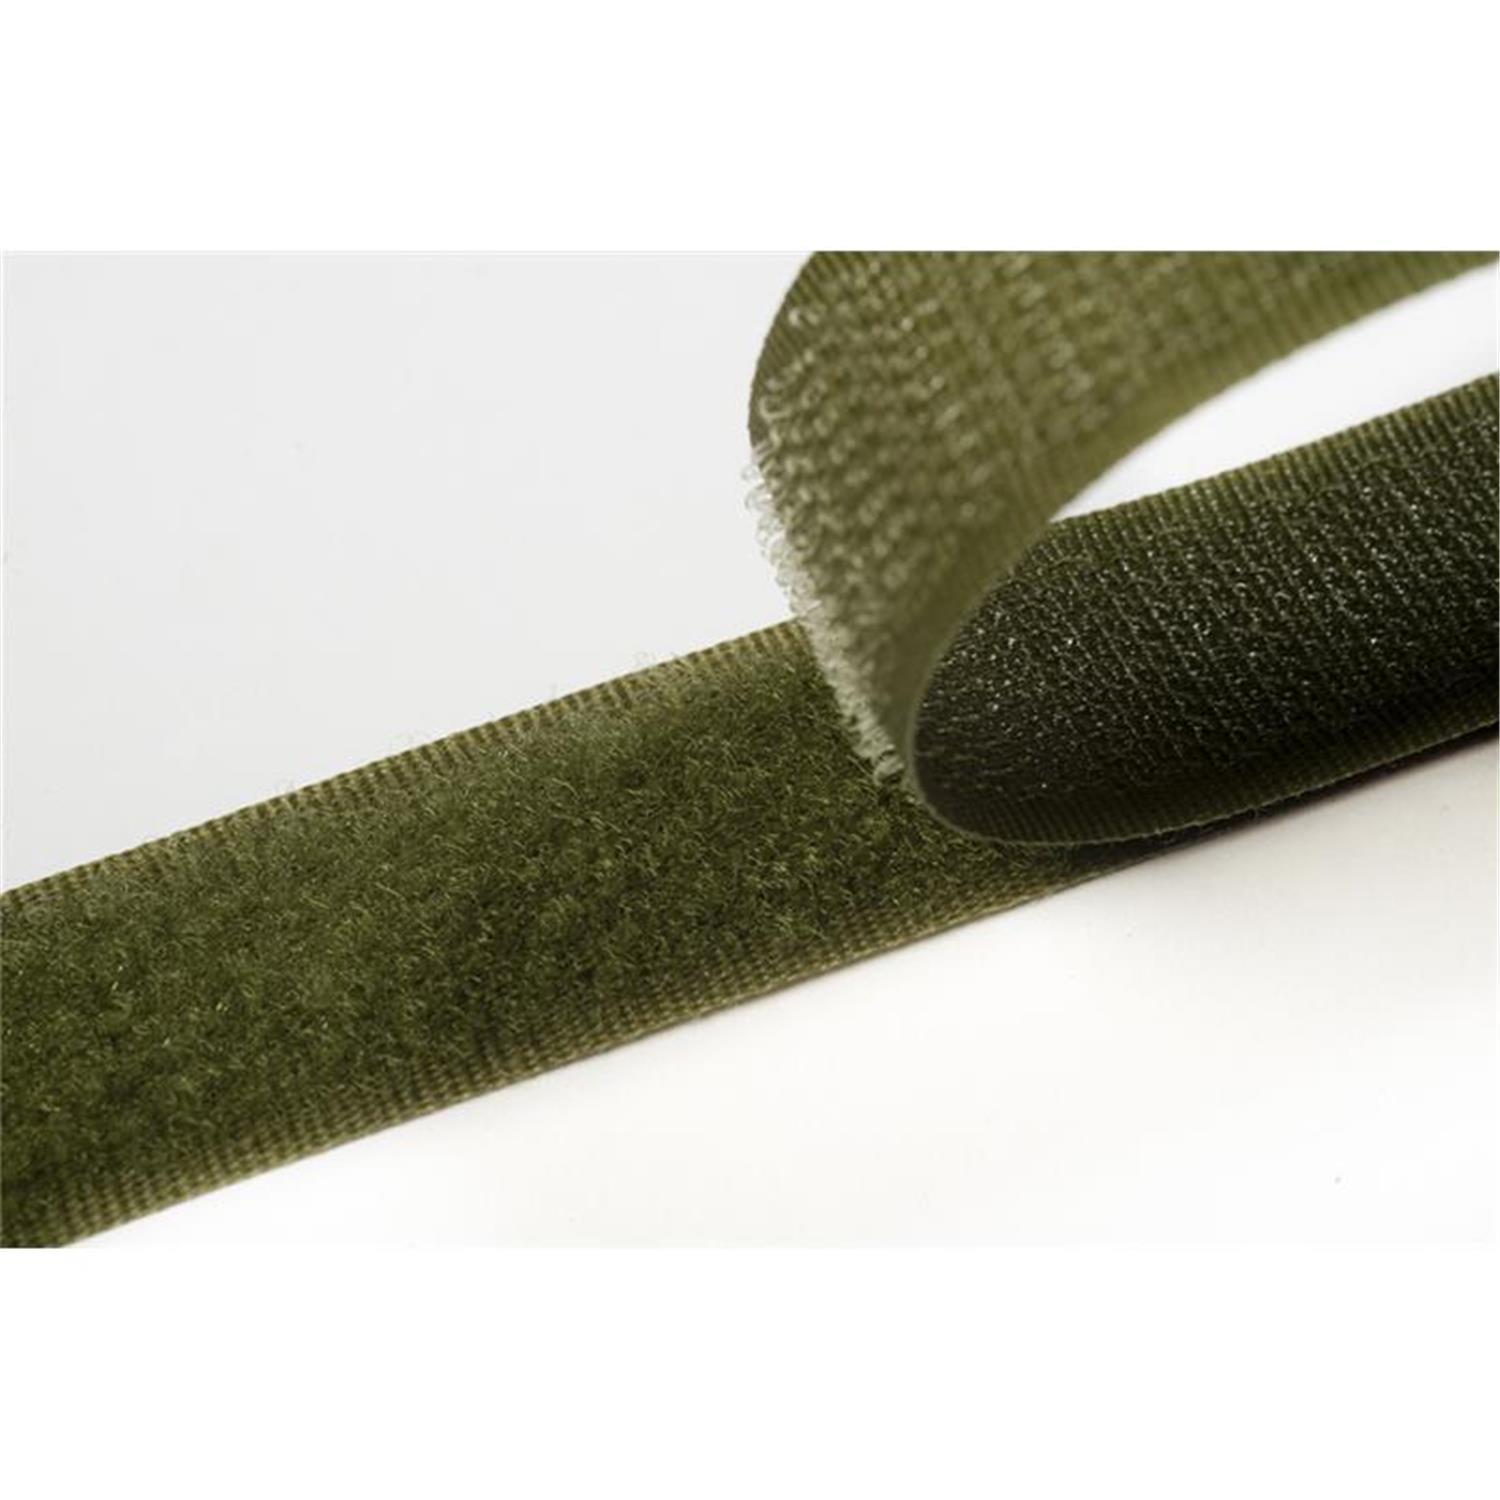 Klettband zum aufnähen, 20 mm, olivgrün #34 4 Meter